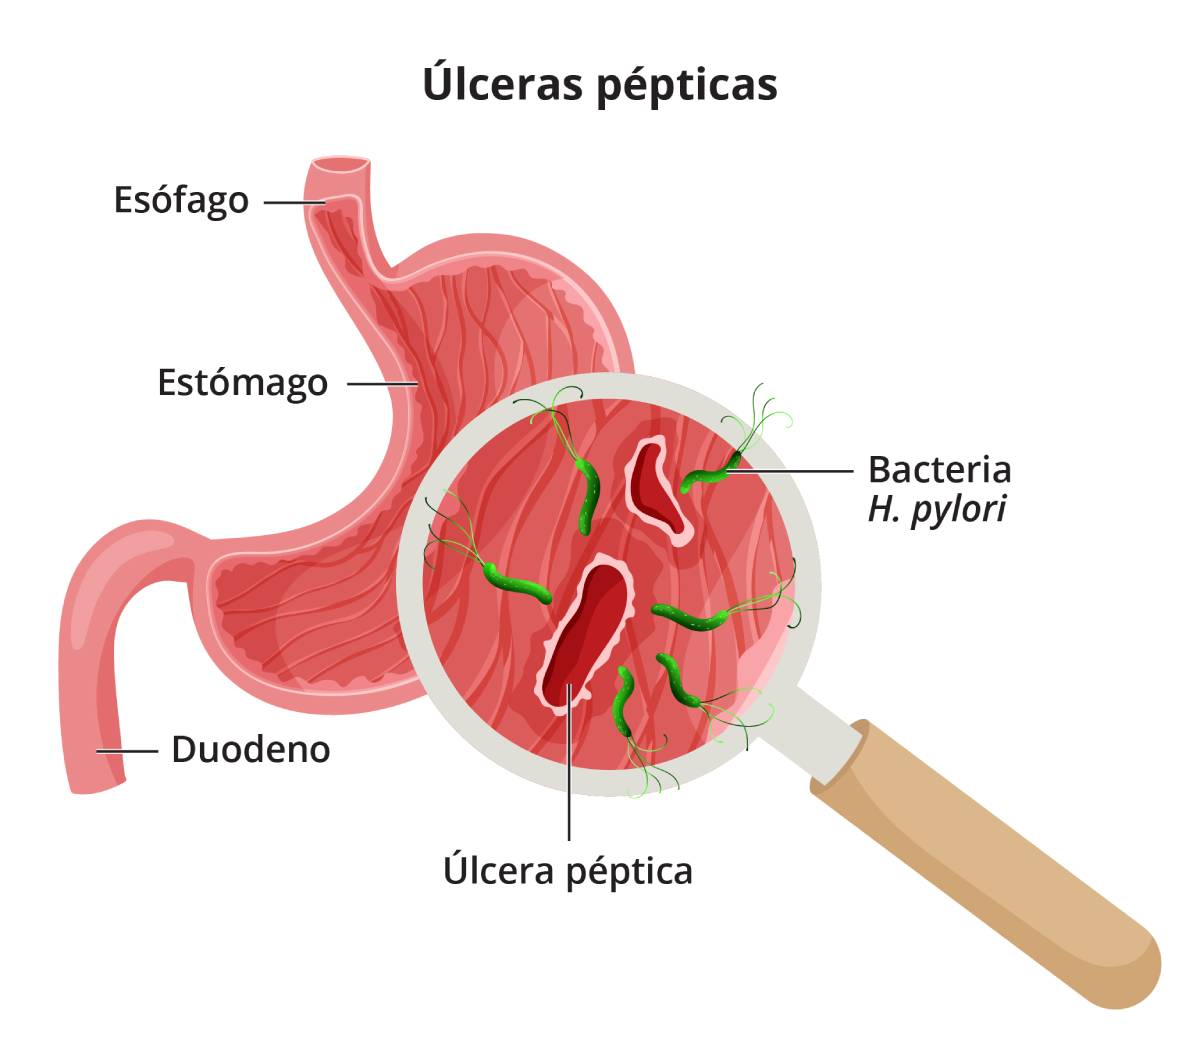 Primer plano de unas úlceras pépticas, que muestra el daño en el revestimiento del estómago causado por la bacteria H. pylori.